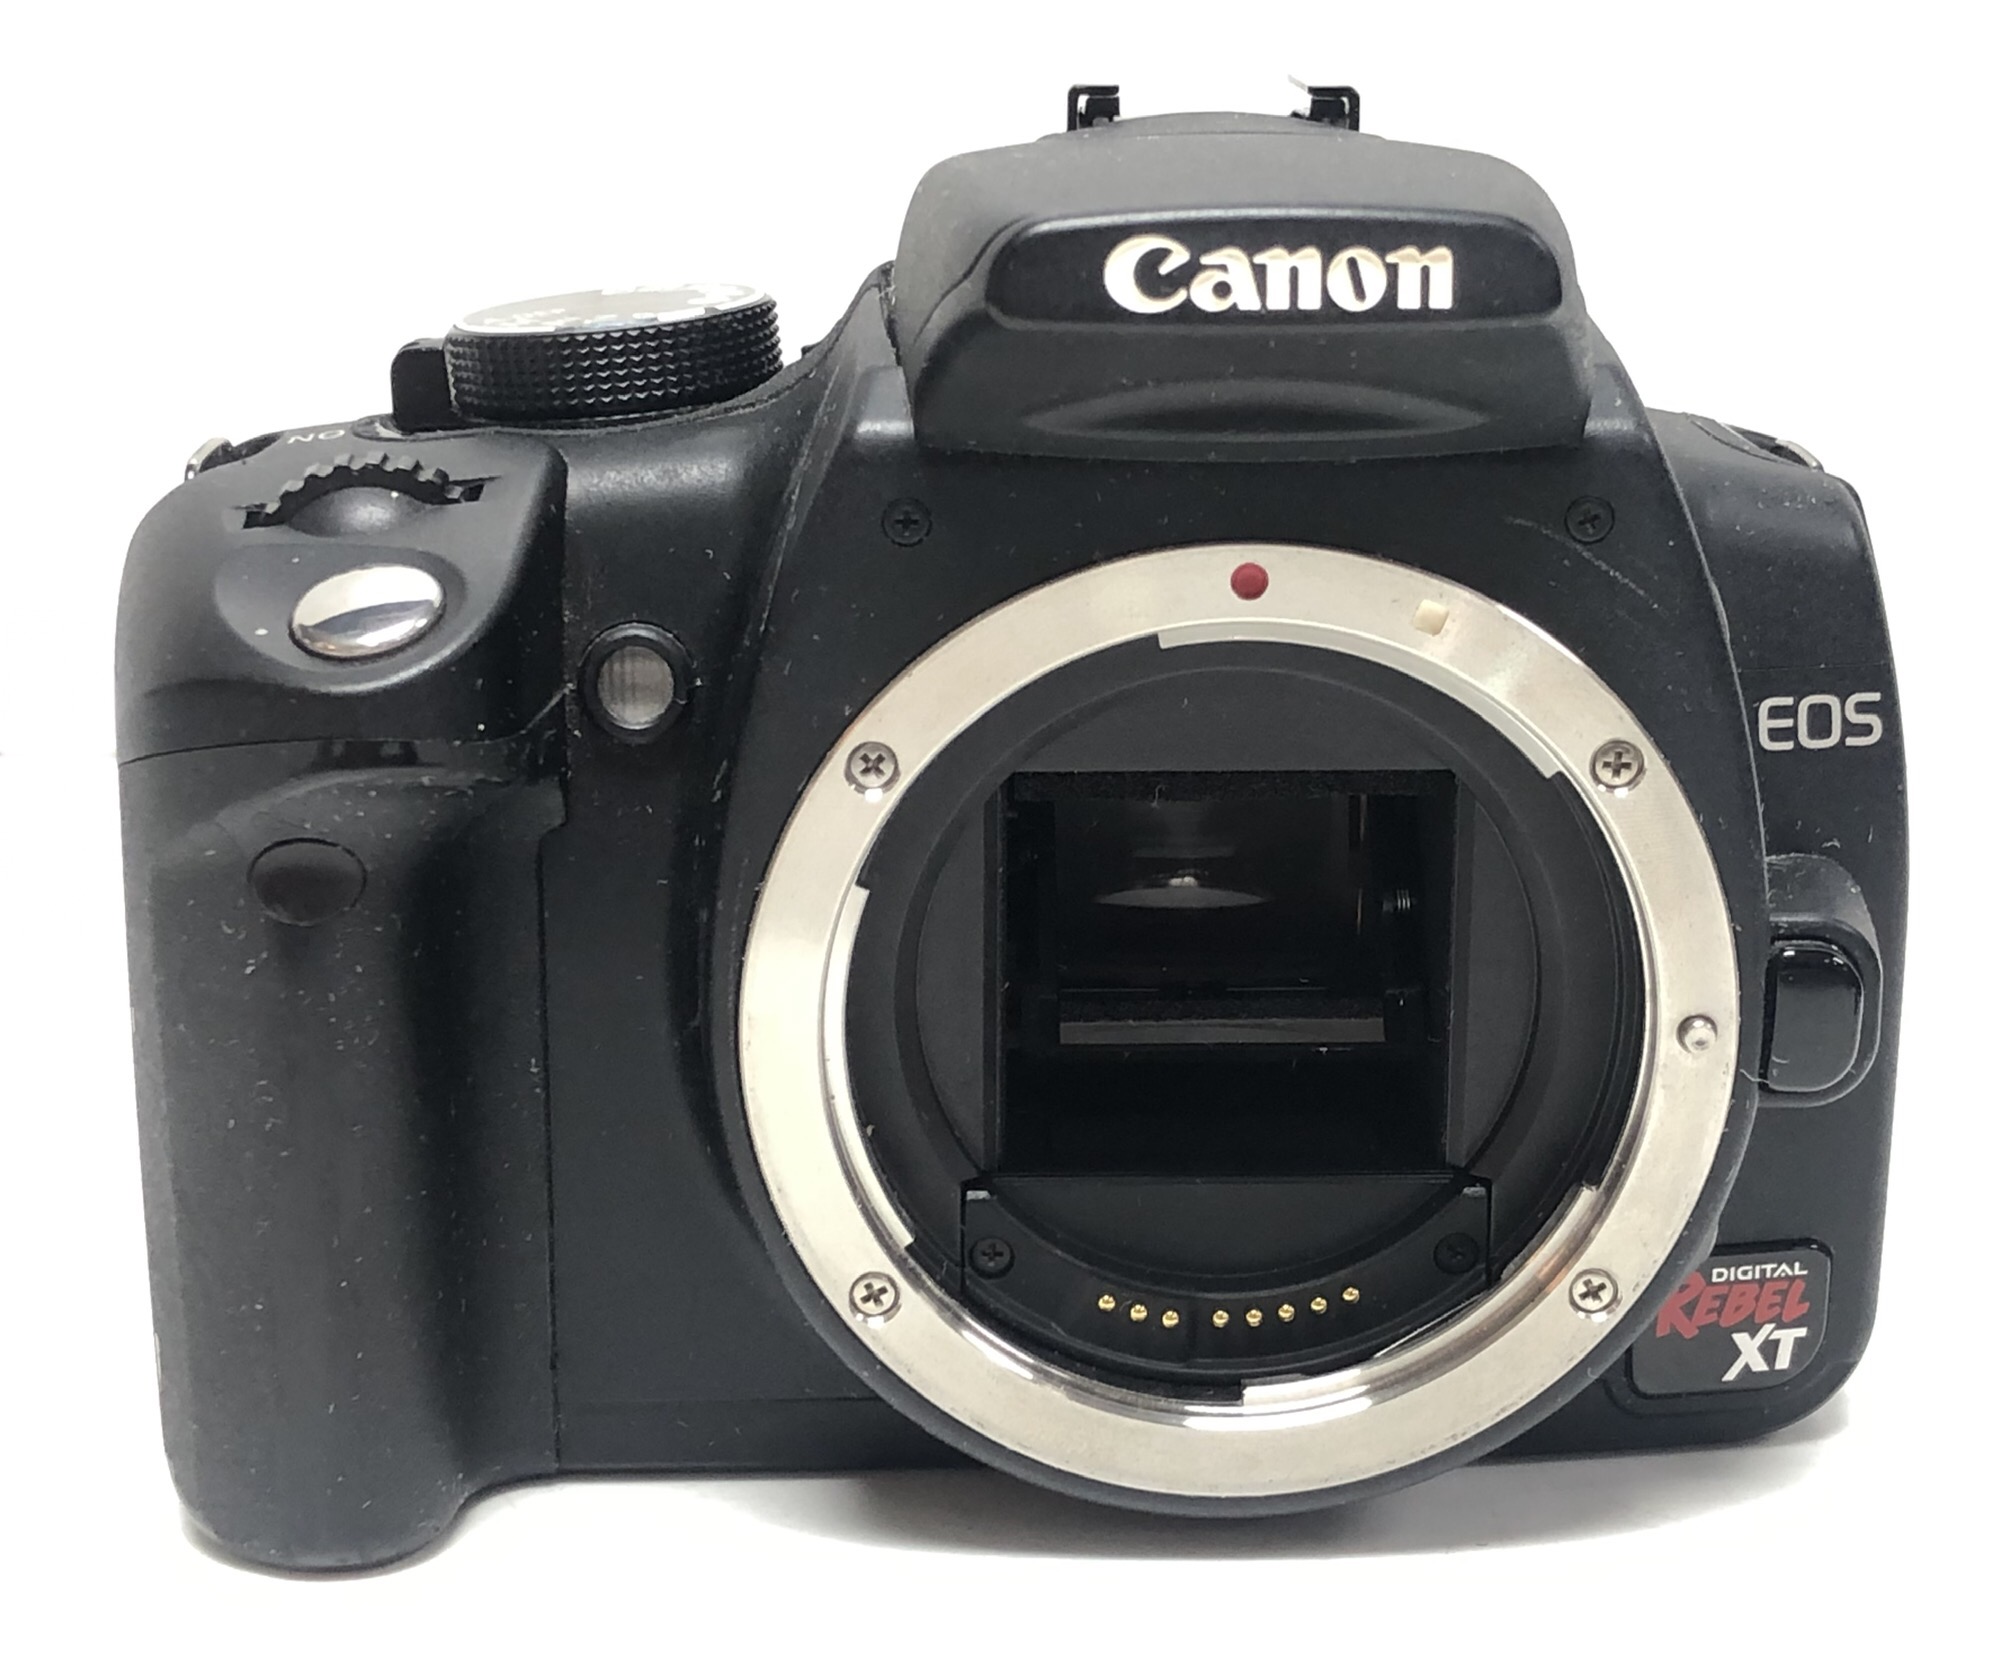 Canon Digital SLR Rebel XT